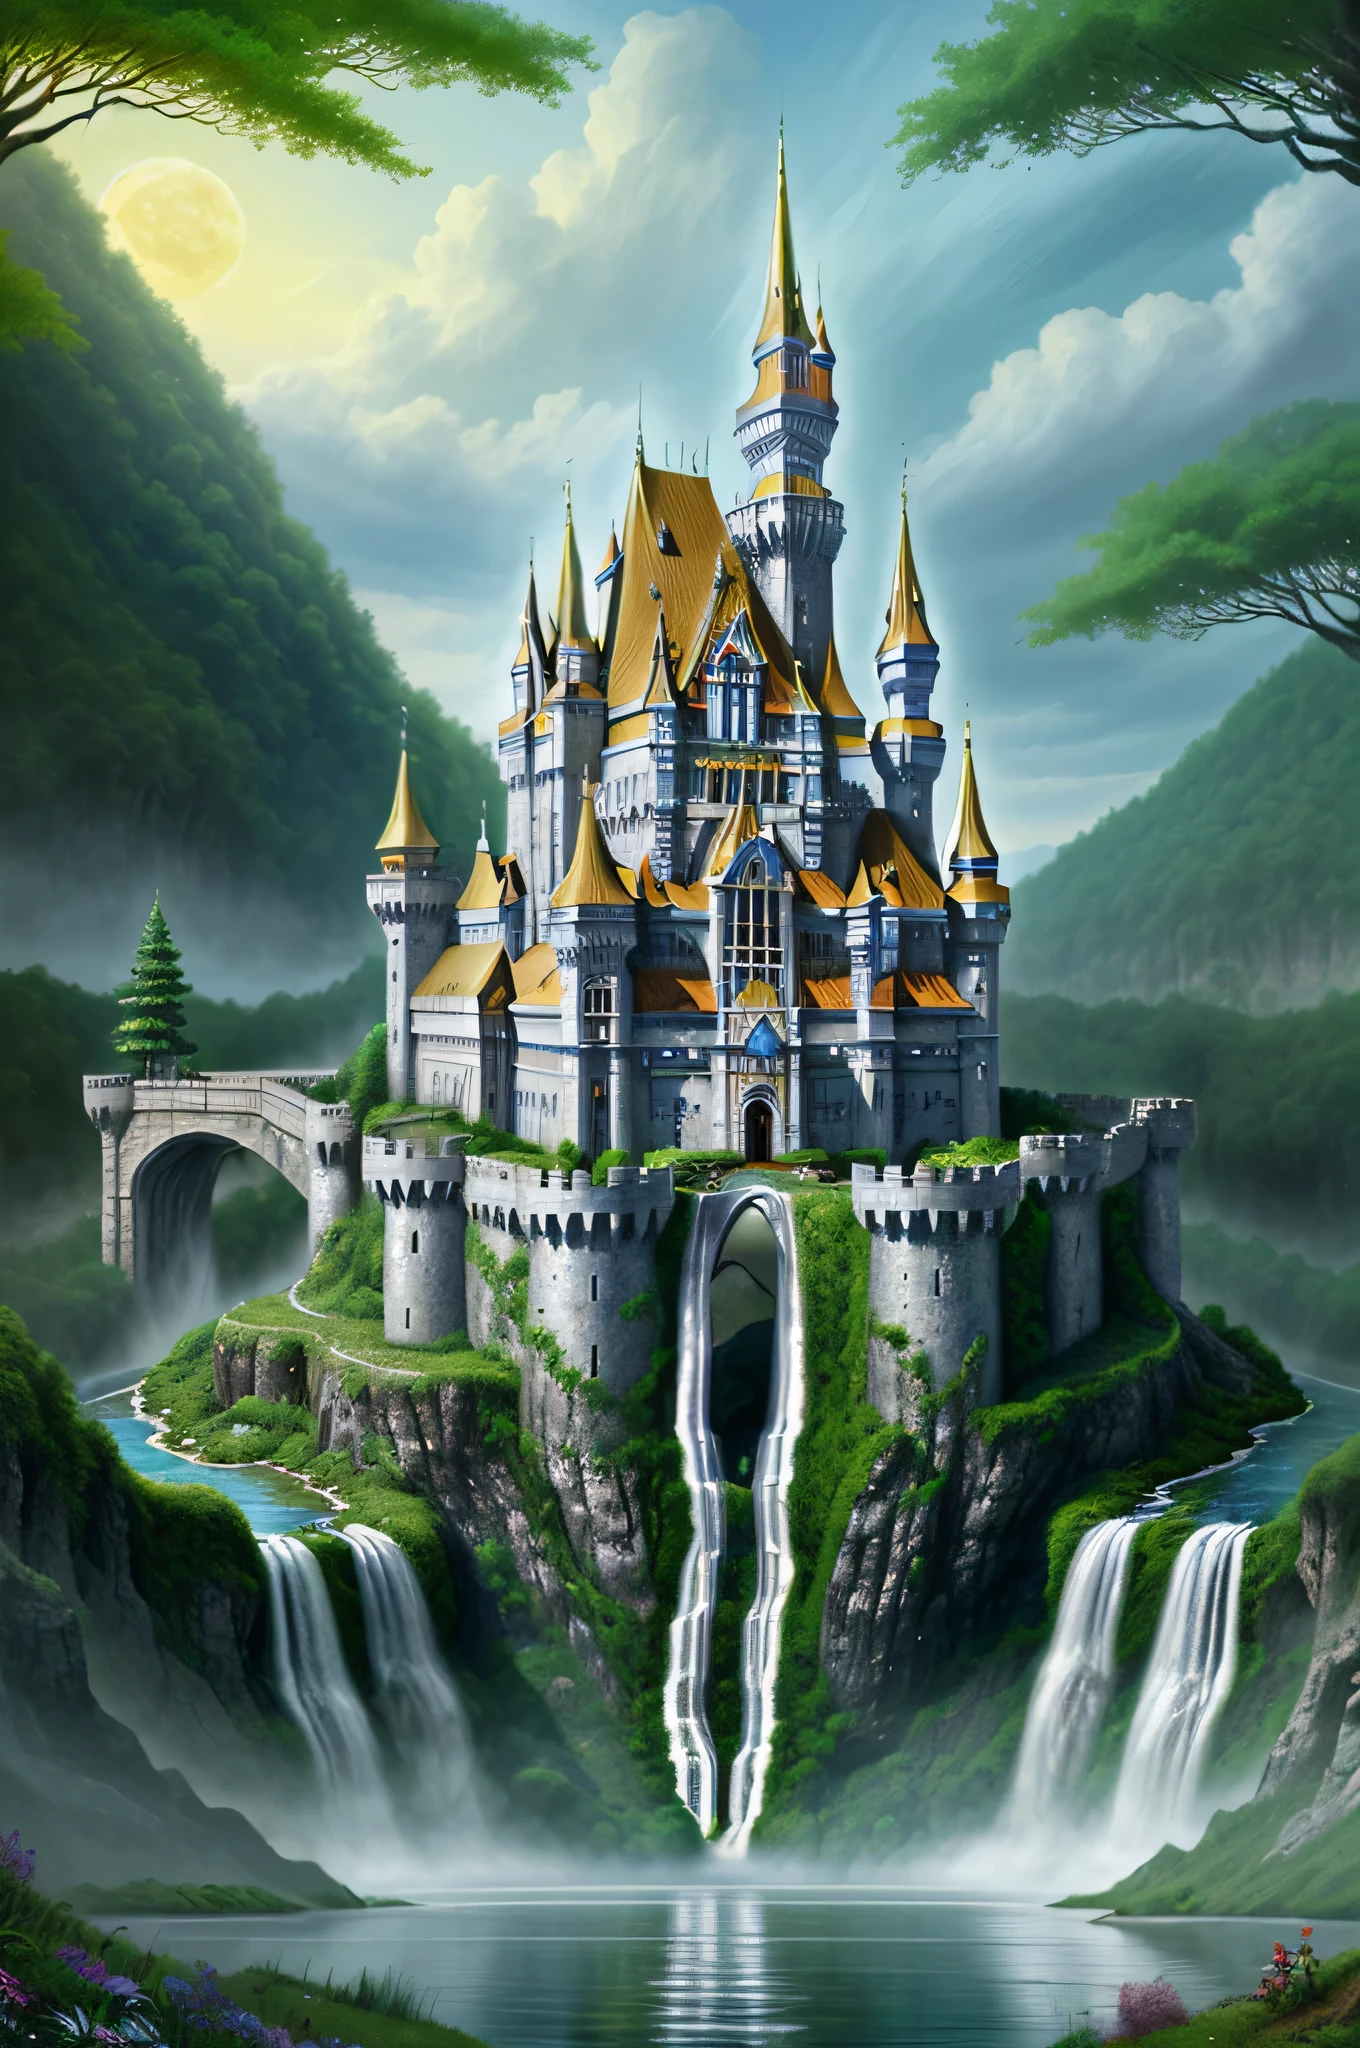 巨大的幻想精靈城堡, 銀宮, 瀑布, 森林, 世界新奇蹟, 傑作, 高品質,